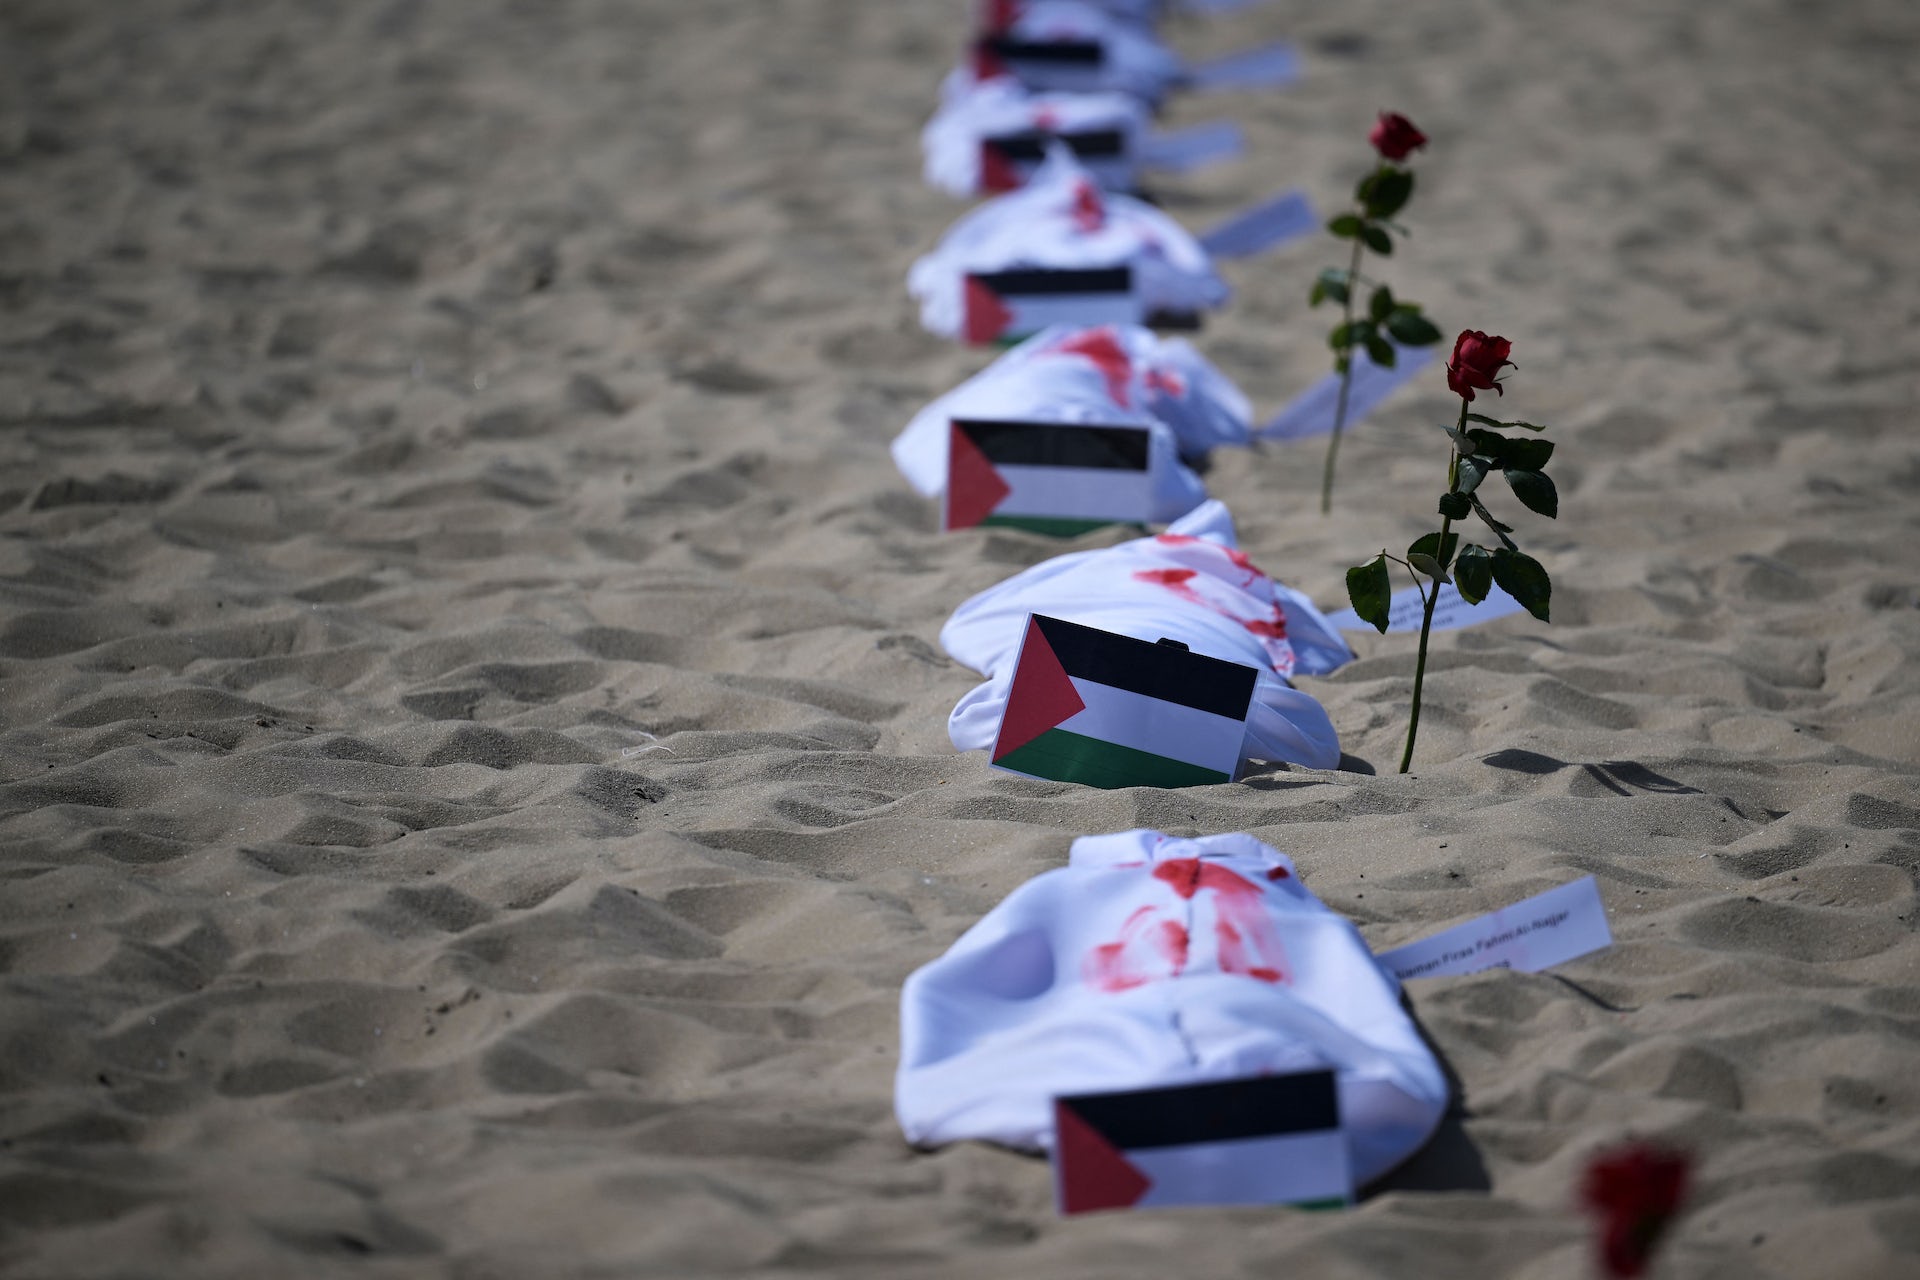 cobertores brancos com tinta vermelha ao lado de bandeiras palestinas em uma praia.